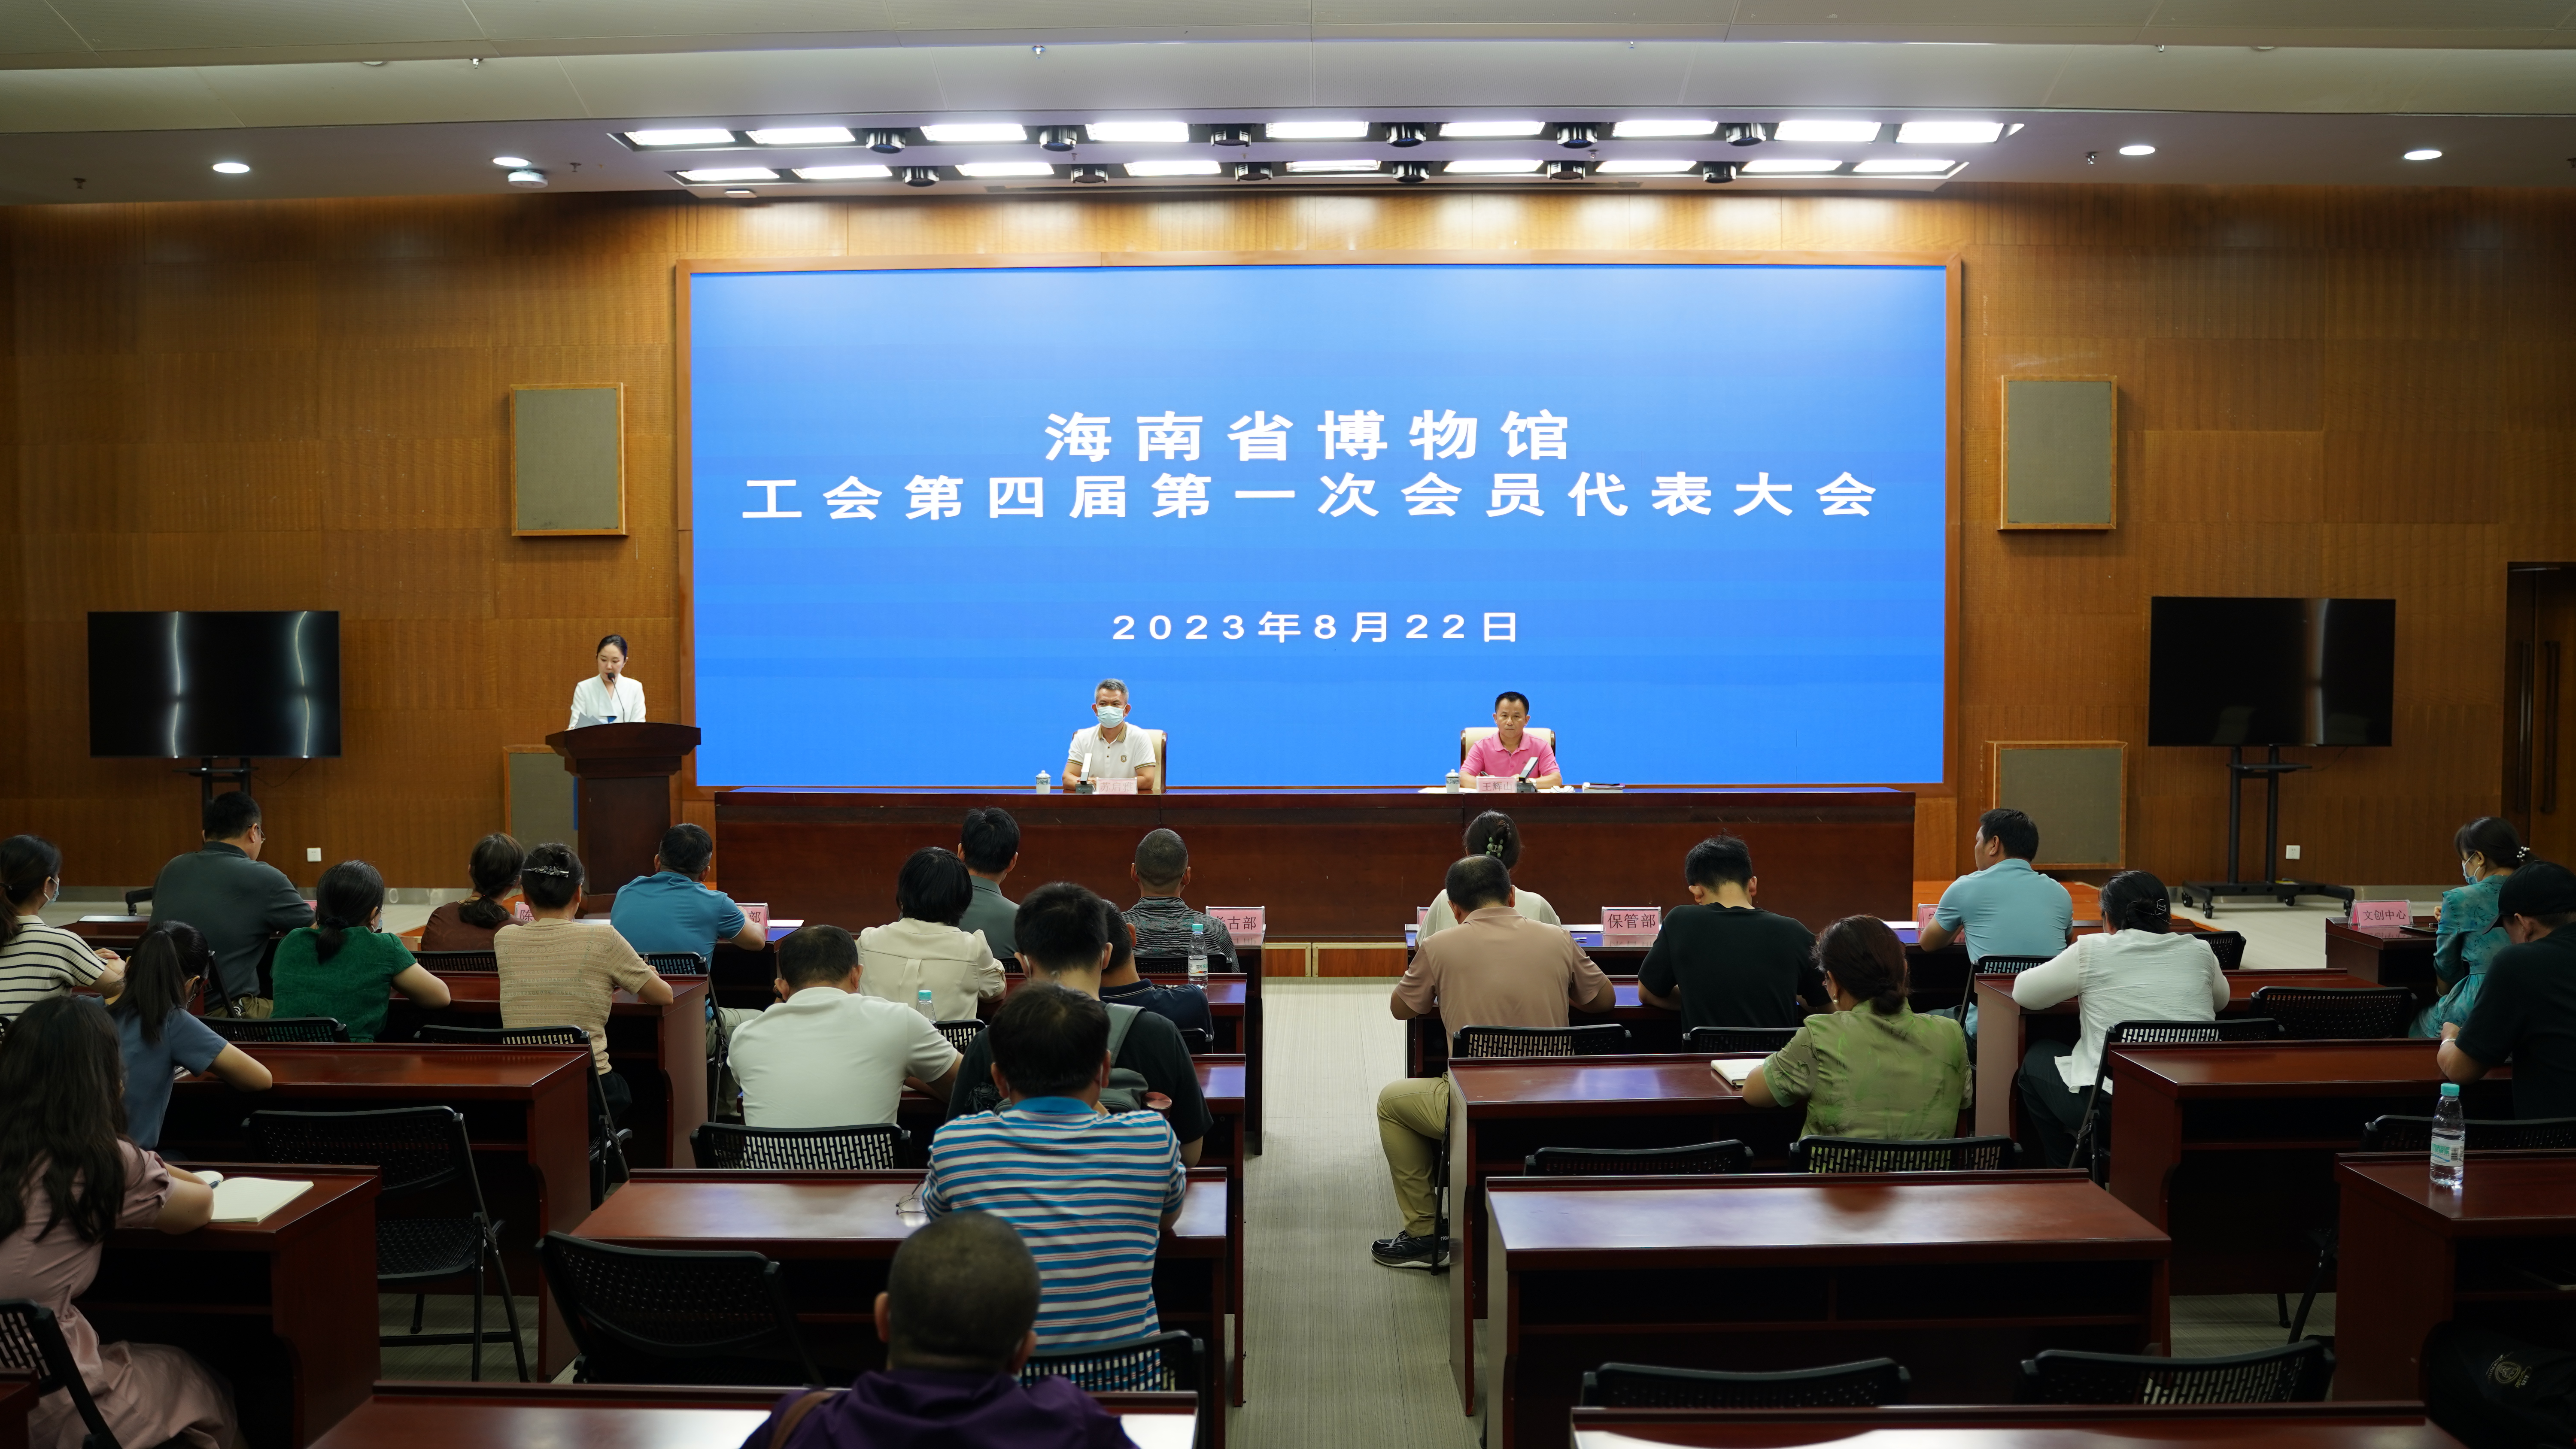 海南省博物馆召开工会第四届第一次会员代表大会  